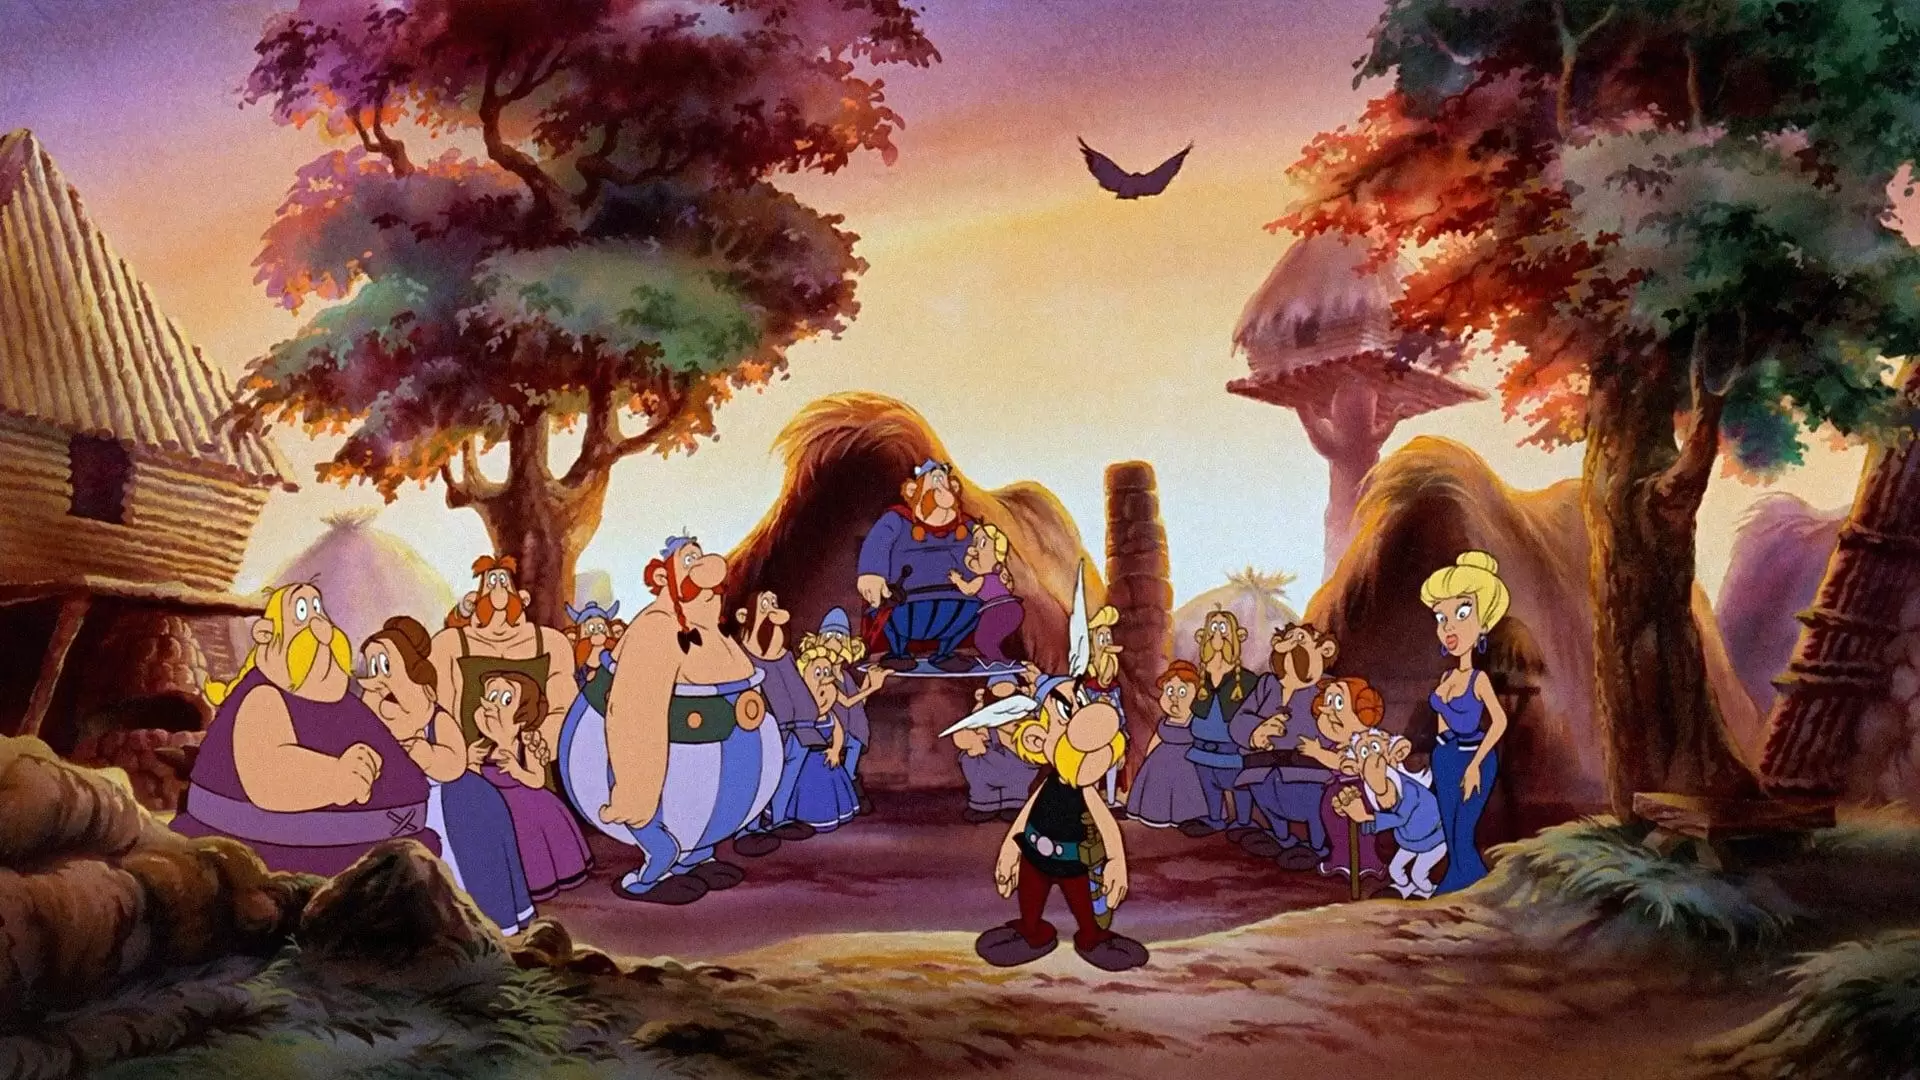 دانلود انیمیشن Asterix and the Big Fight 1989